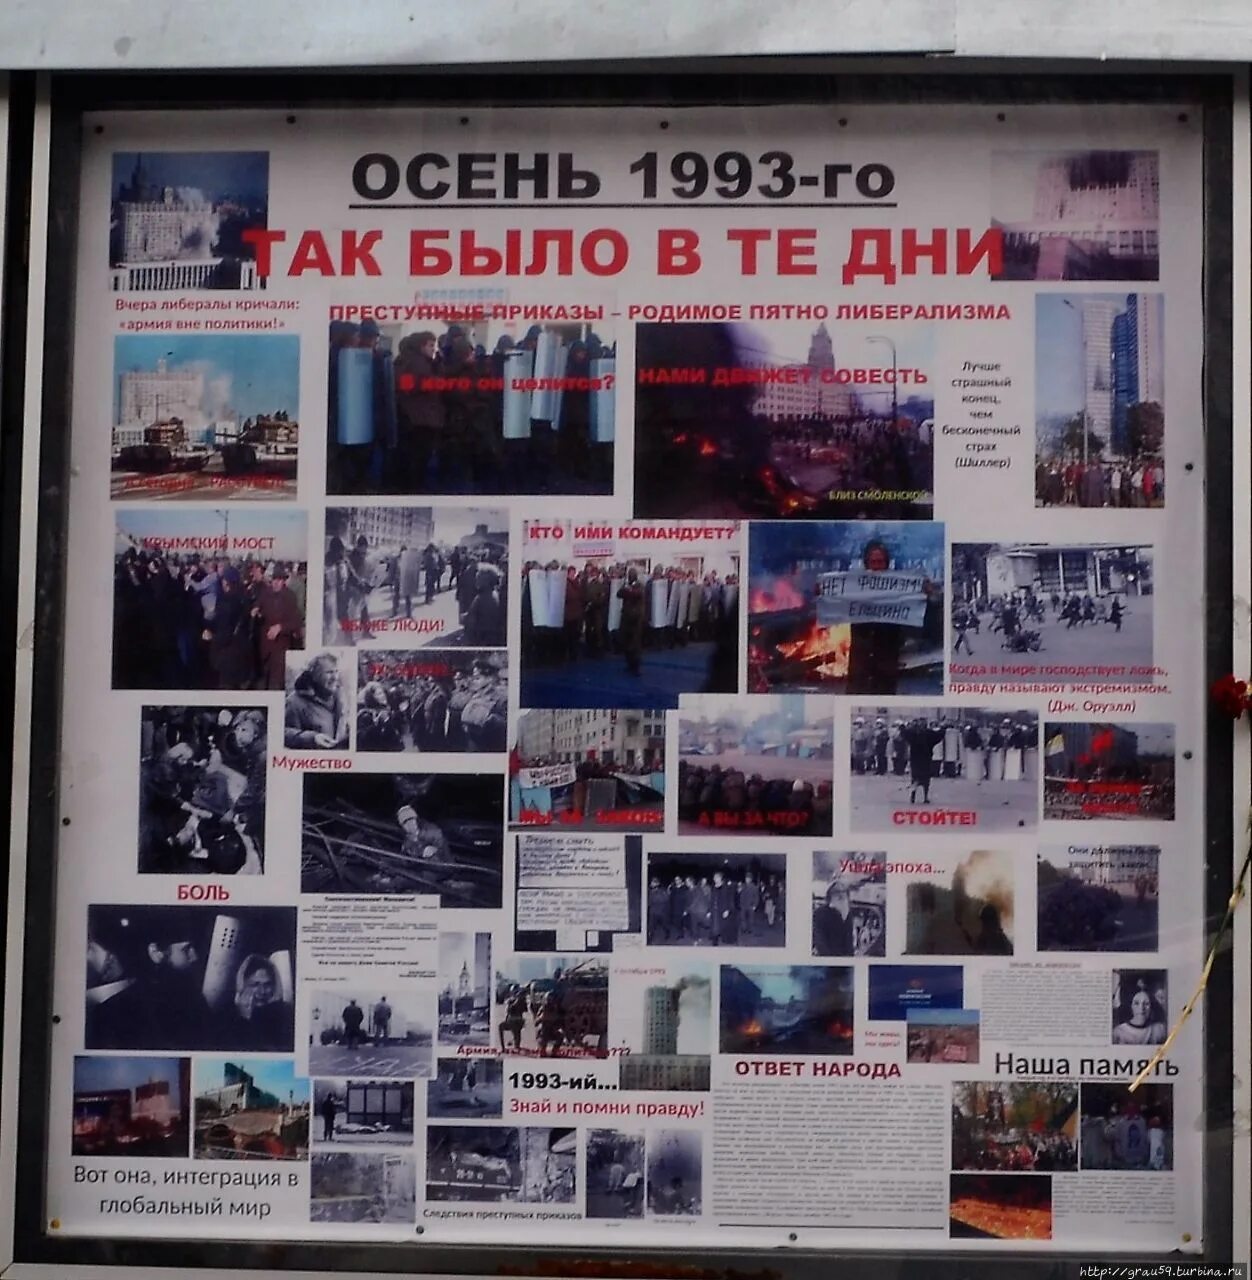 Территория 1993. Мемориальная территория 1993. Москва осенью 1993 года⁠⁠.